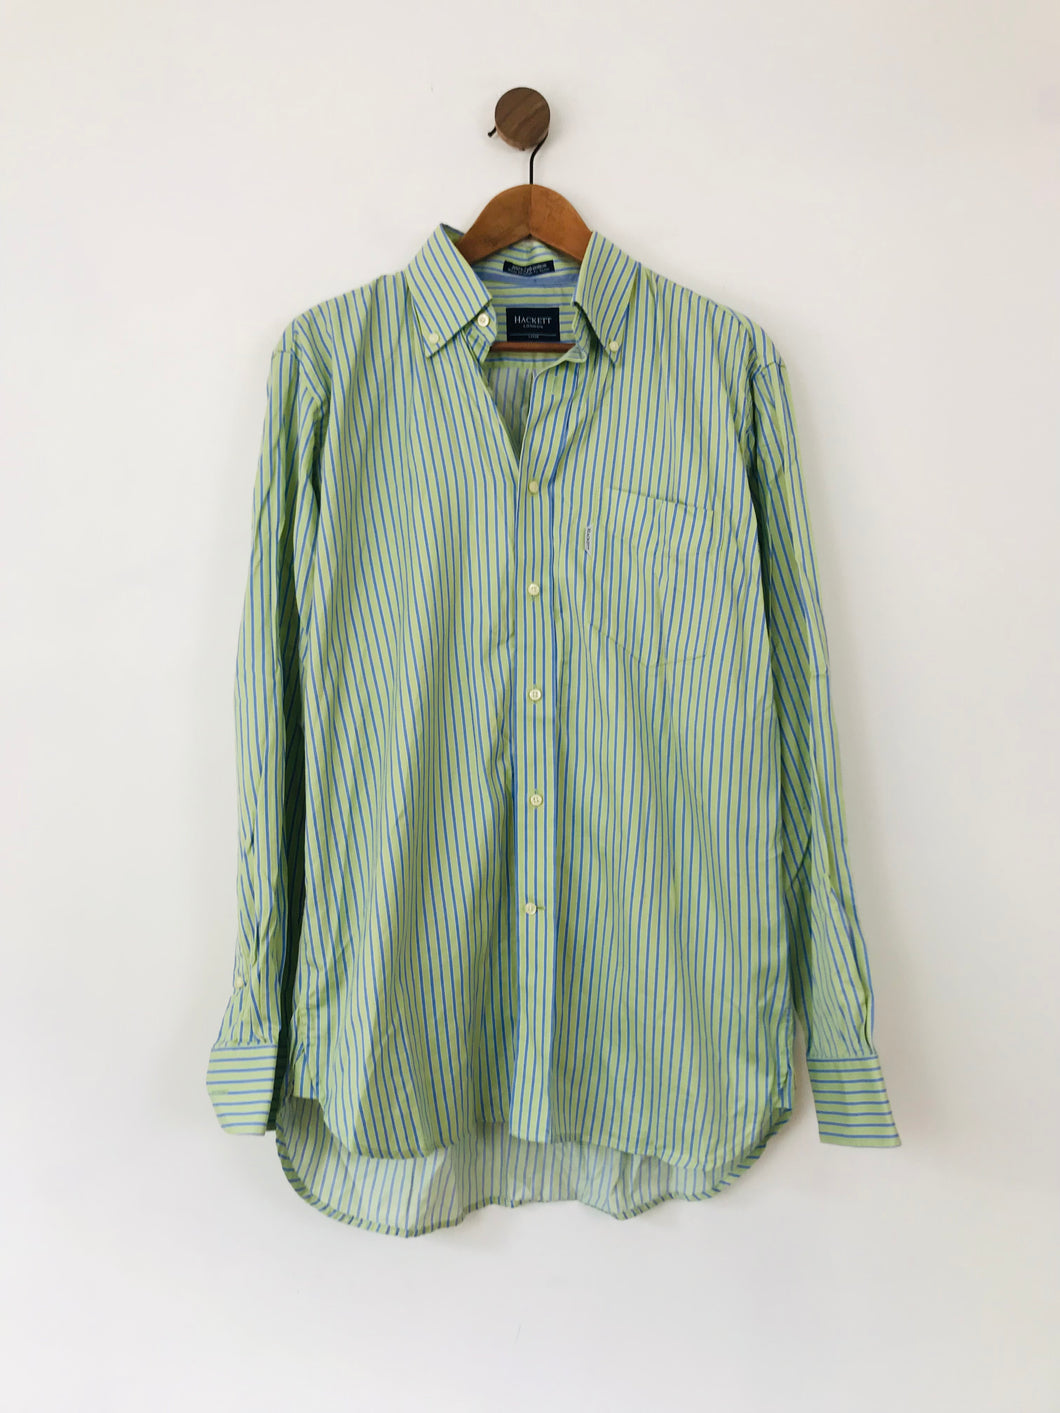 Hackett Men's Striped Button-Up Shirt | L | Green